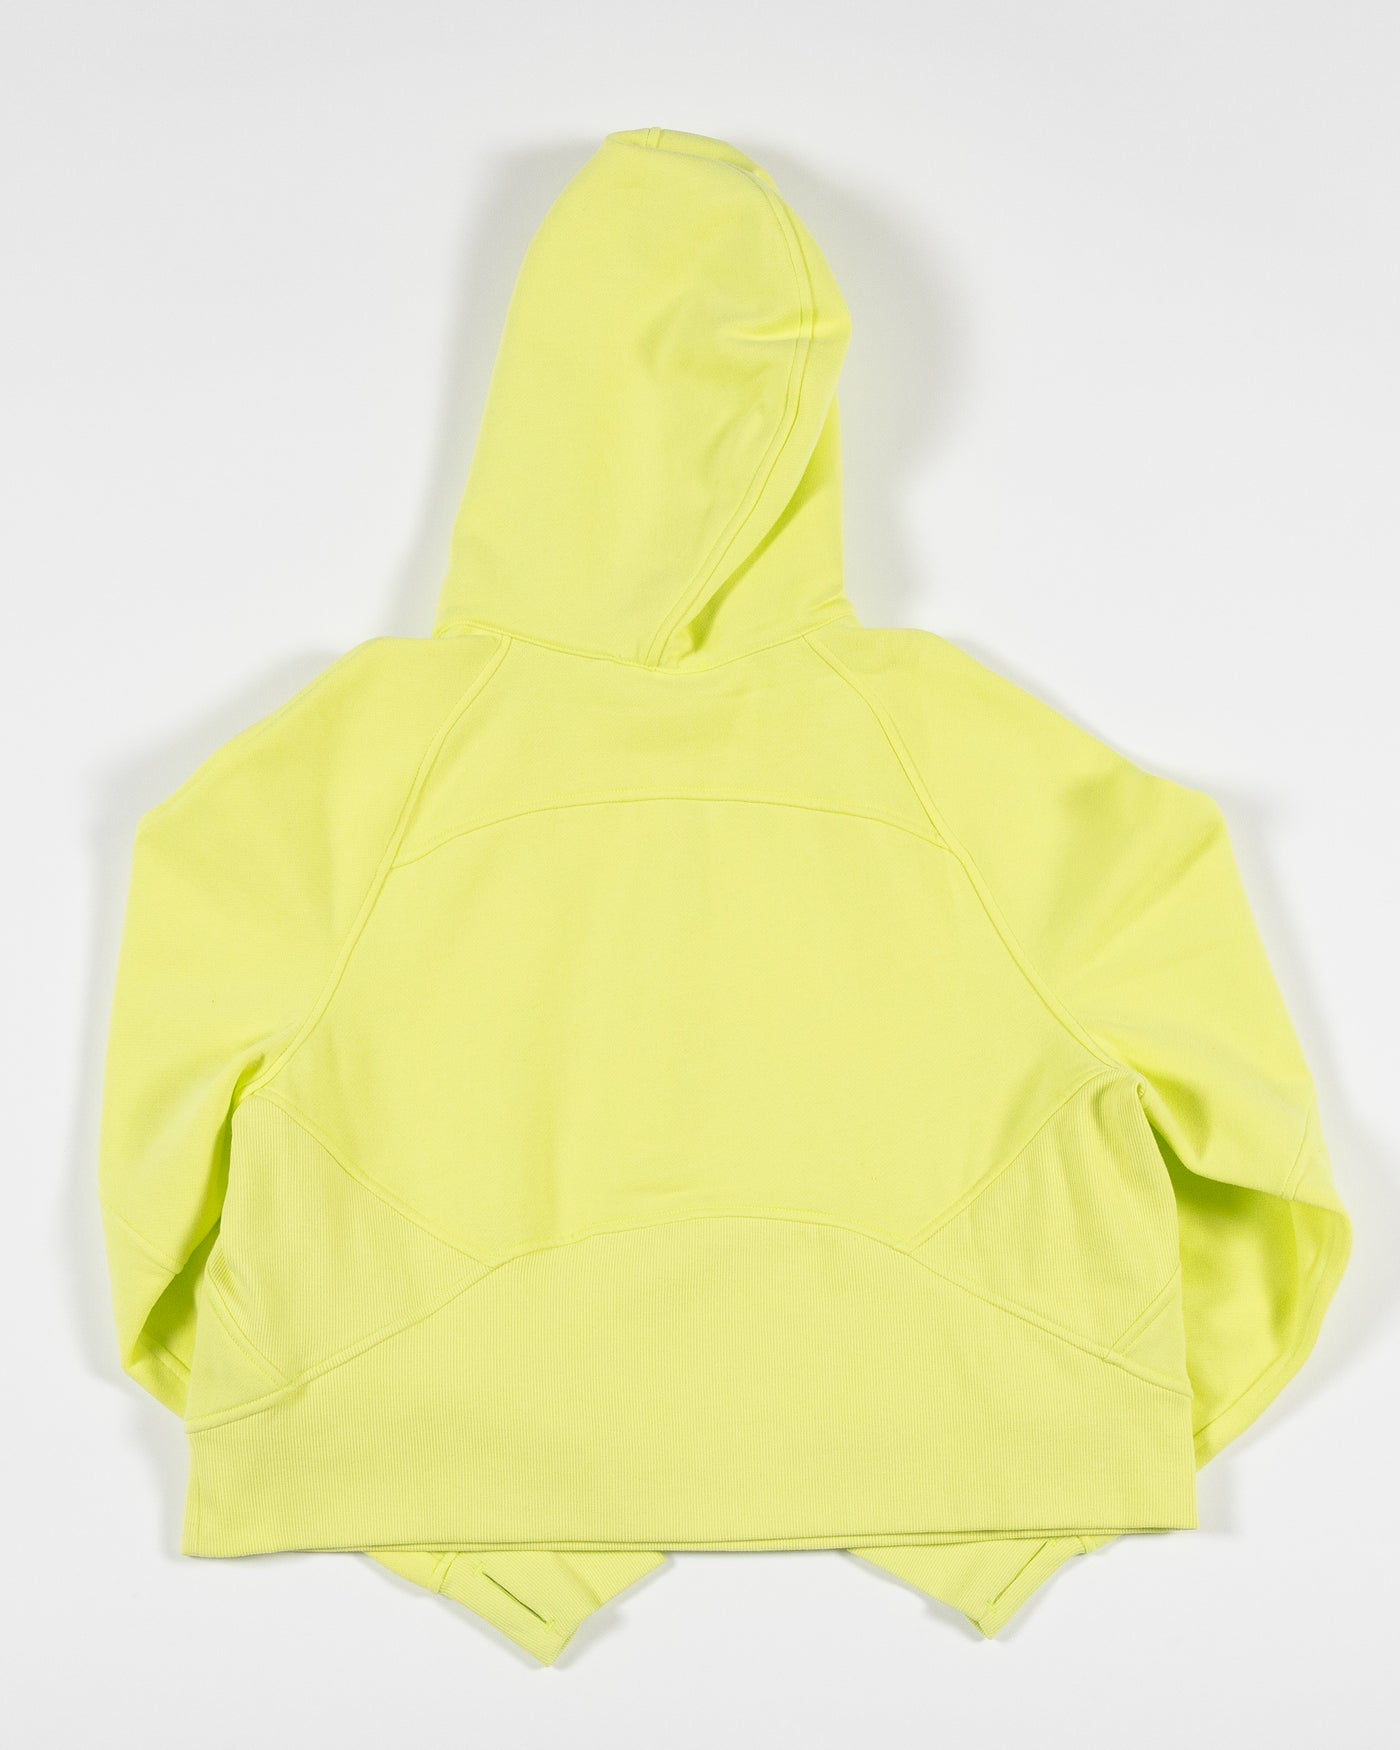 Lululemon Women's Half Zip Fleece Activewear Jacket Yellow Size S